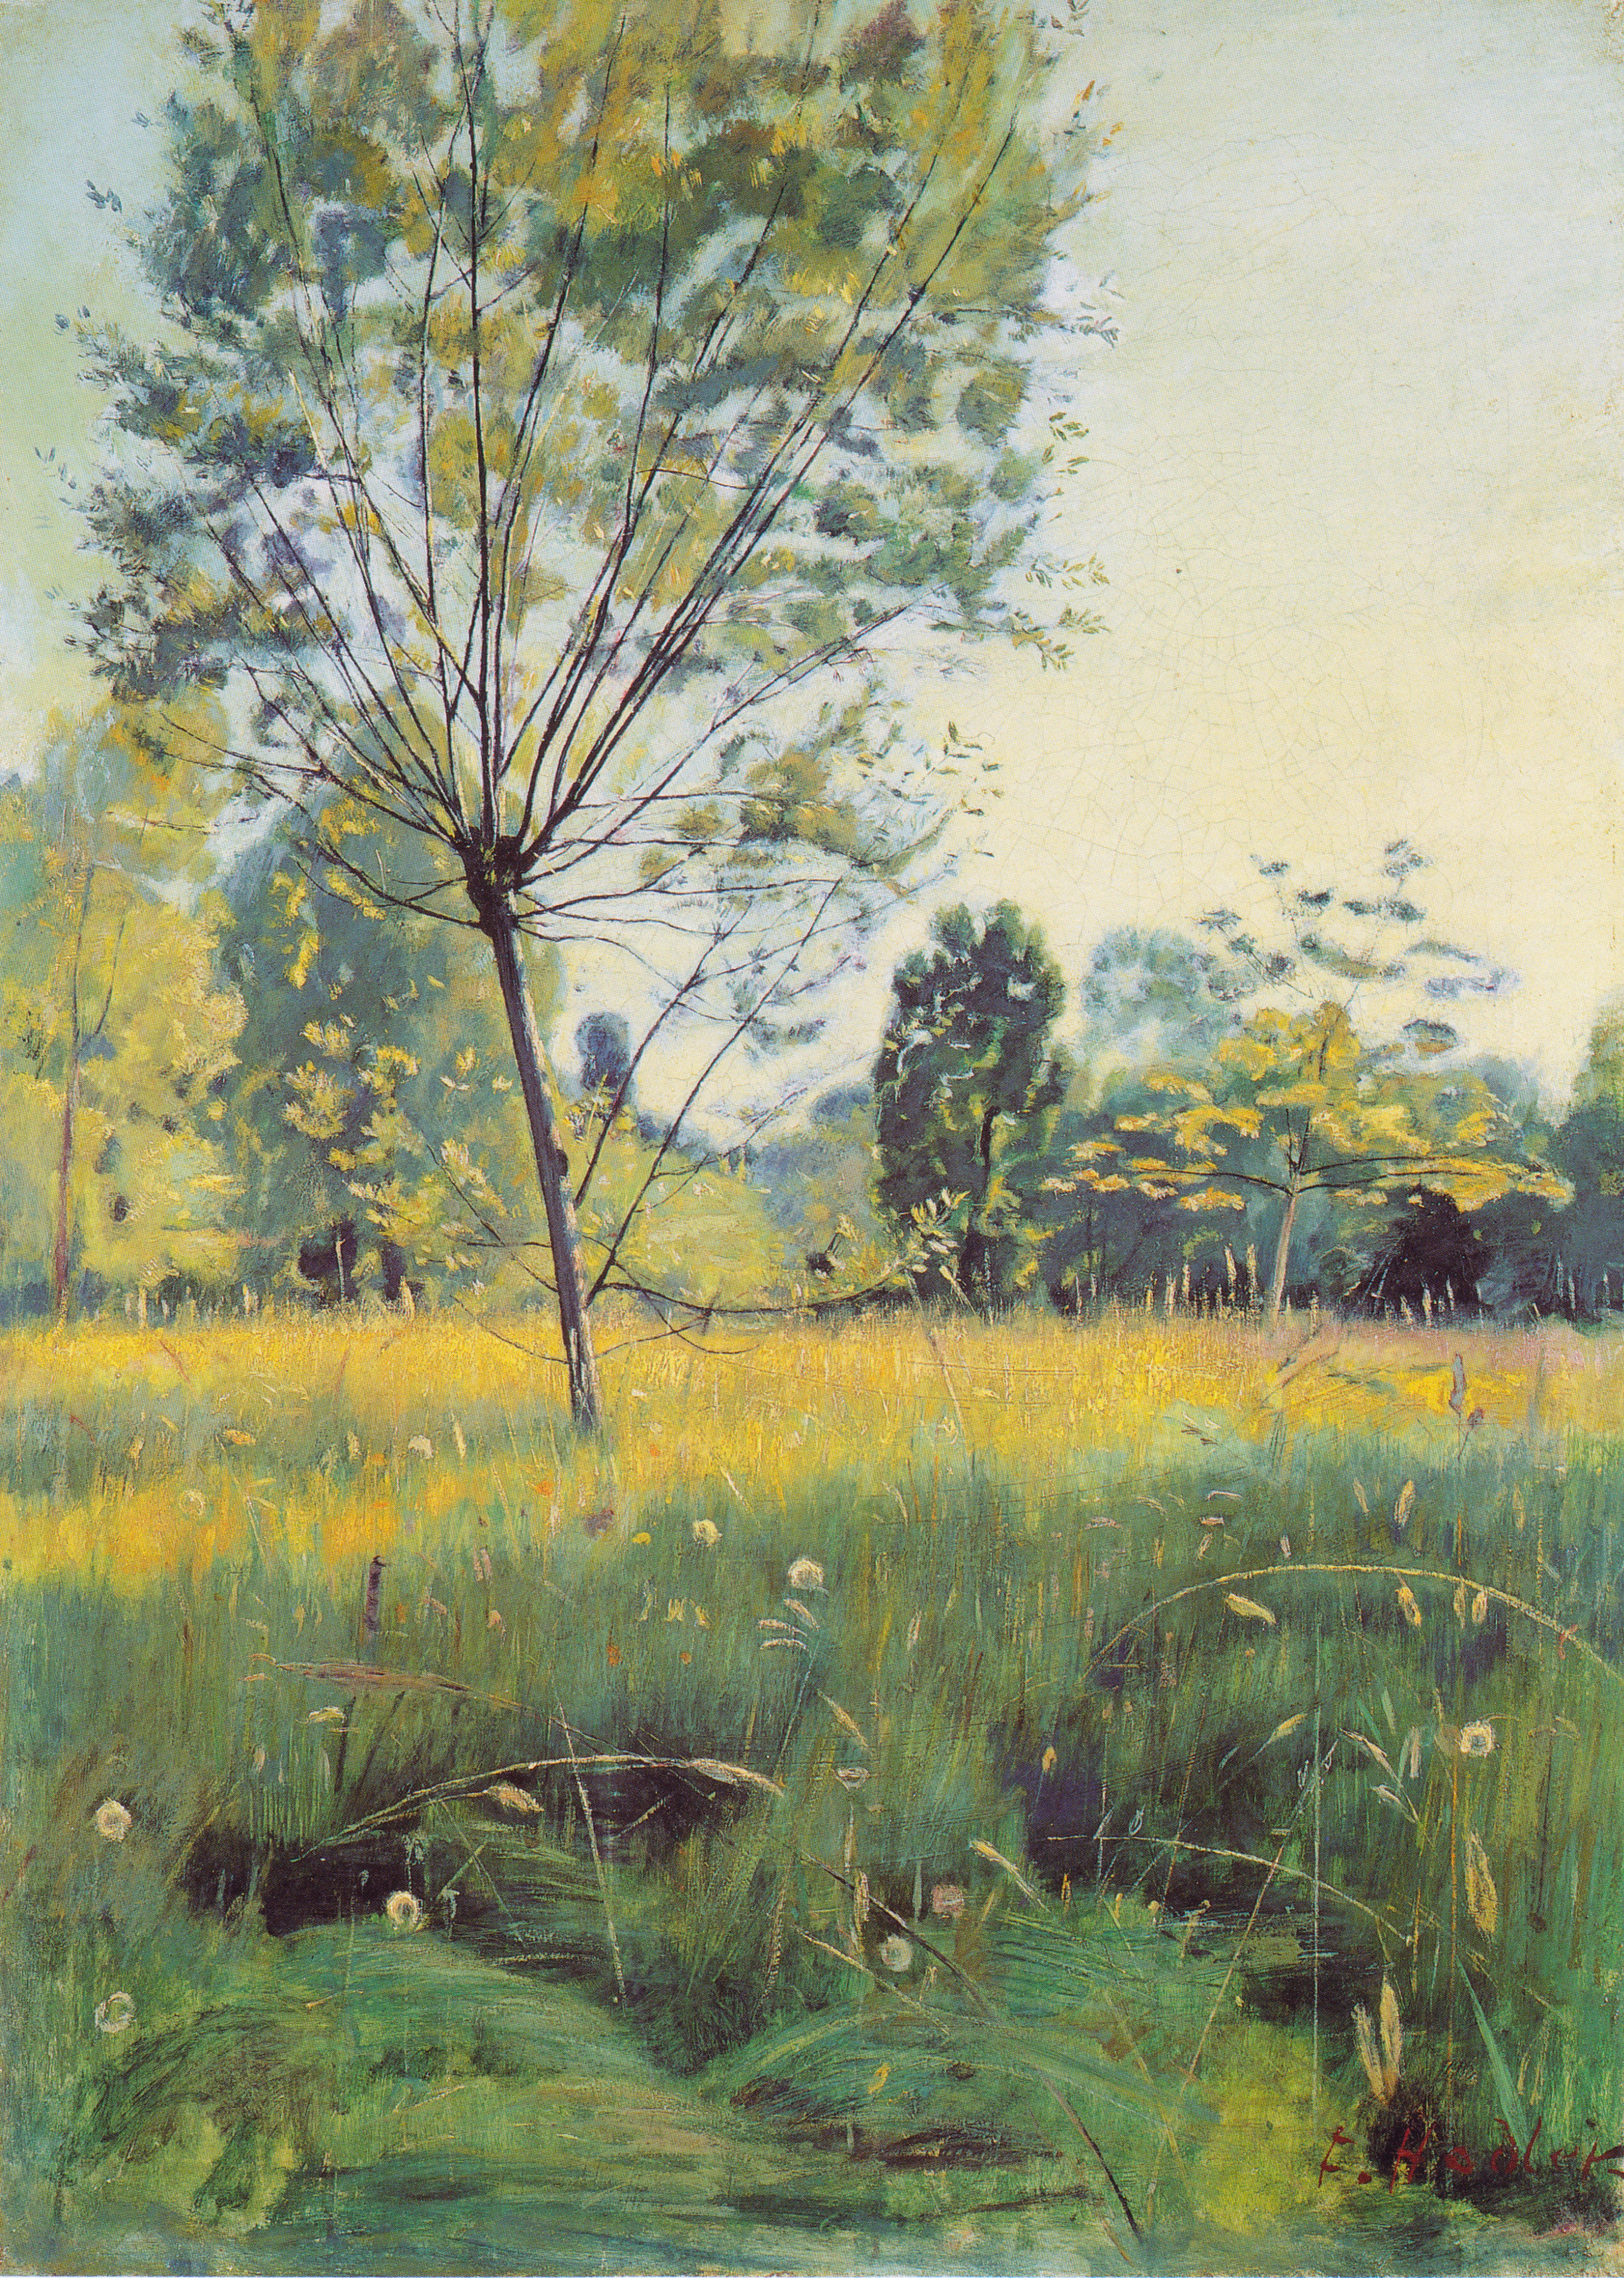 FERDINAND HODLER, FIGURE DE LA PEINTURE SUISSE The-golden-meadow-1890